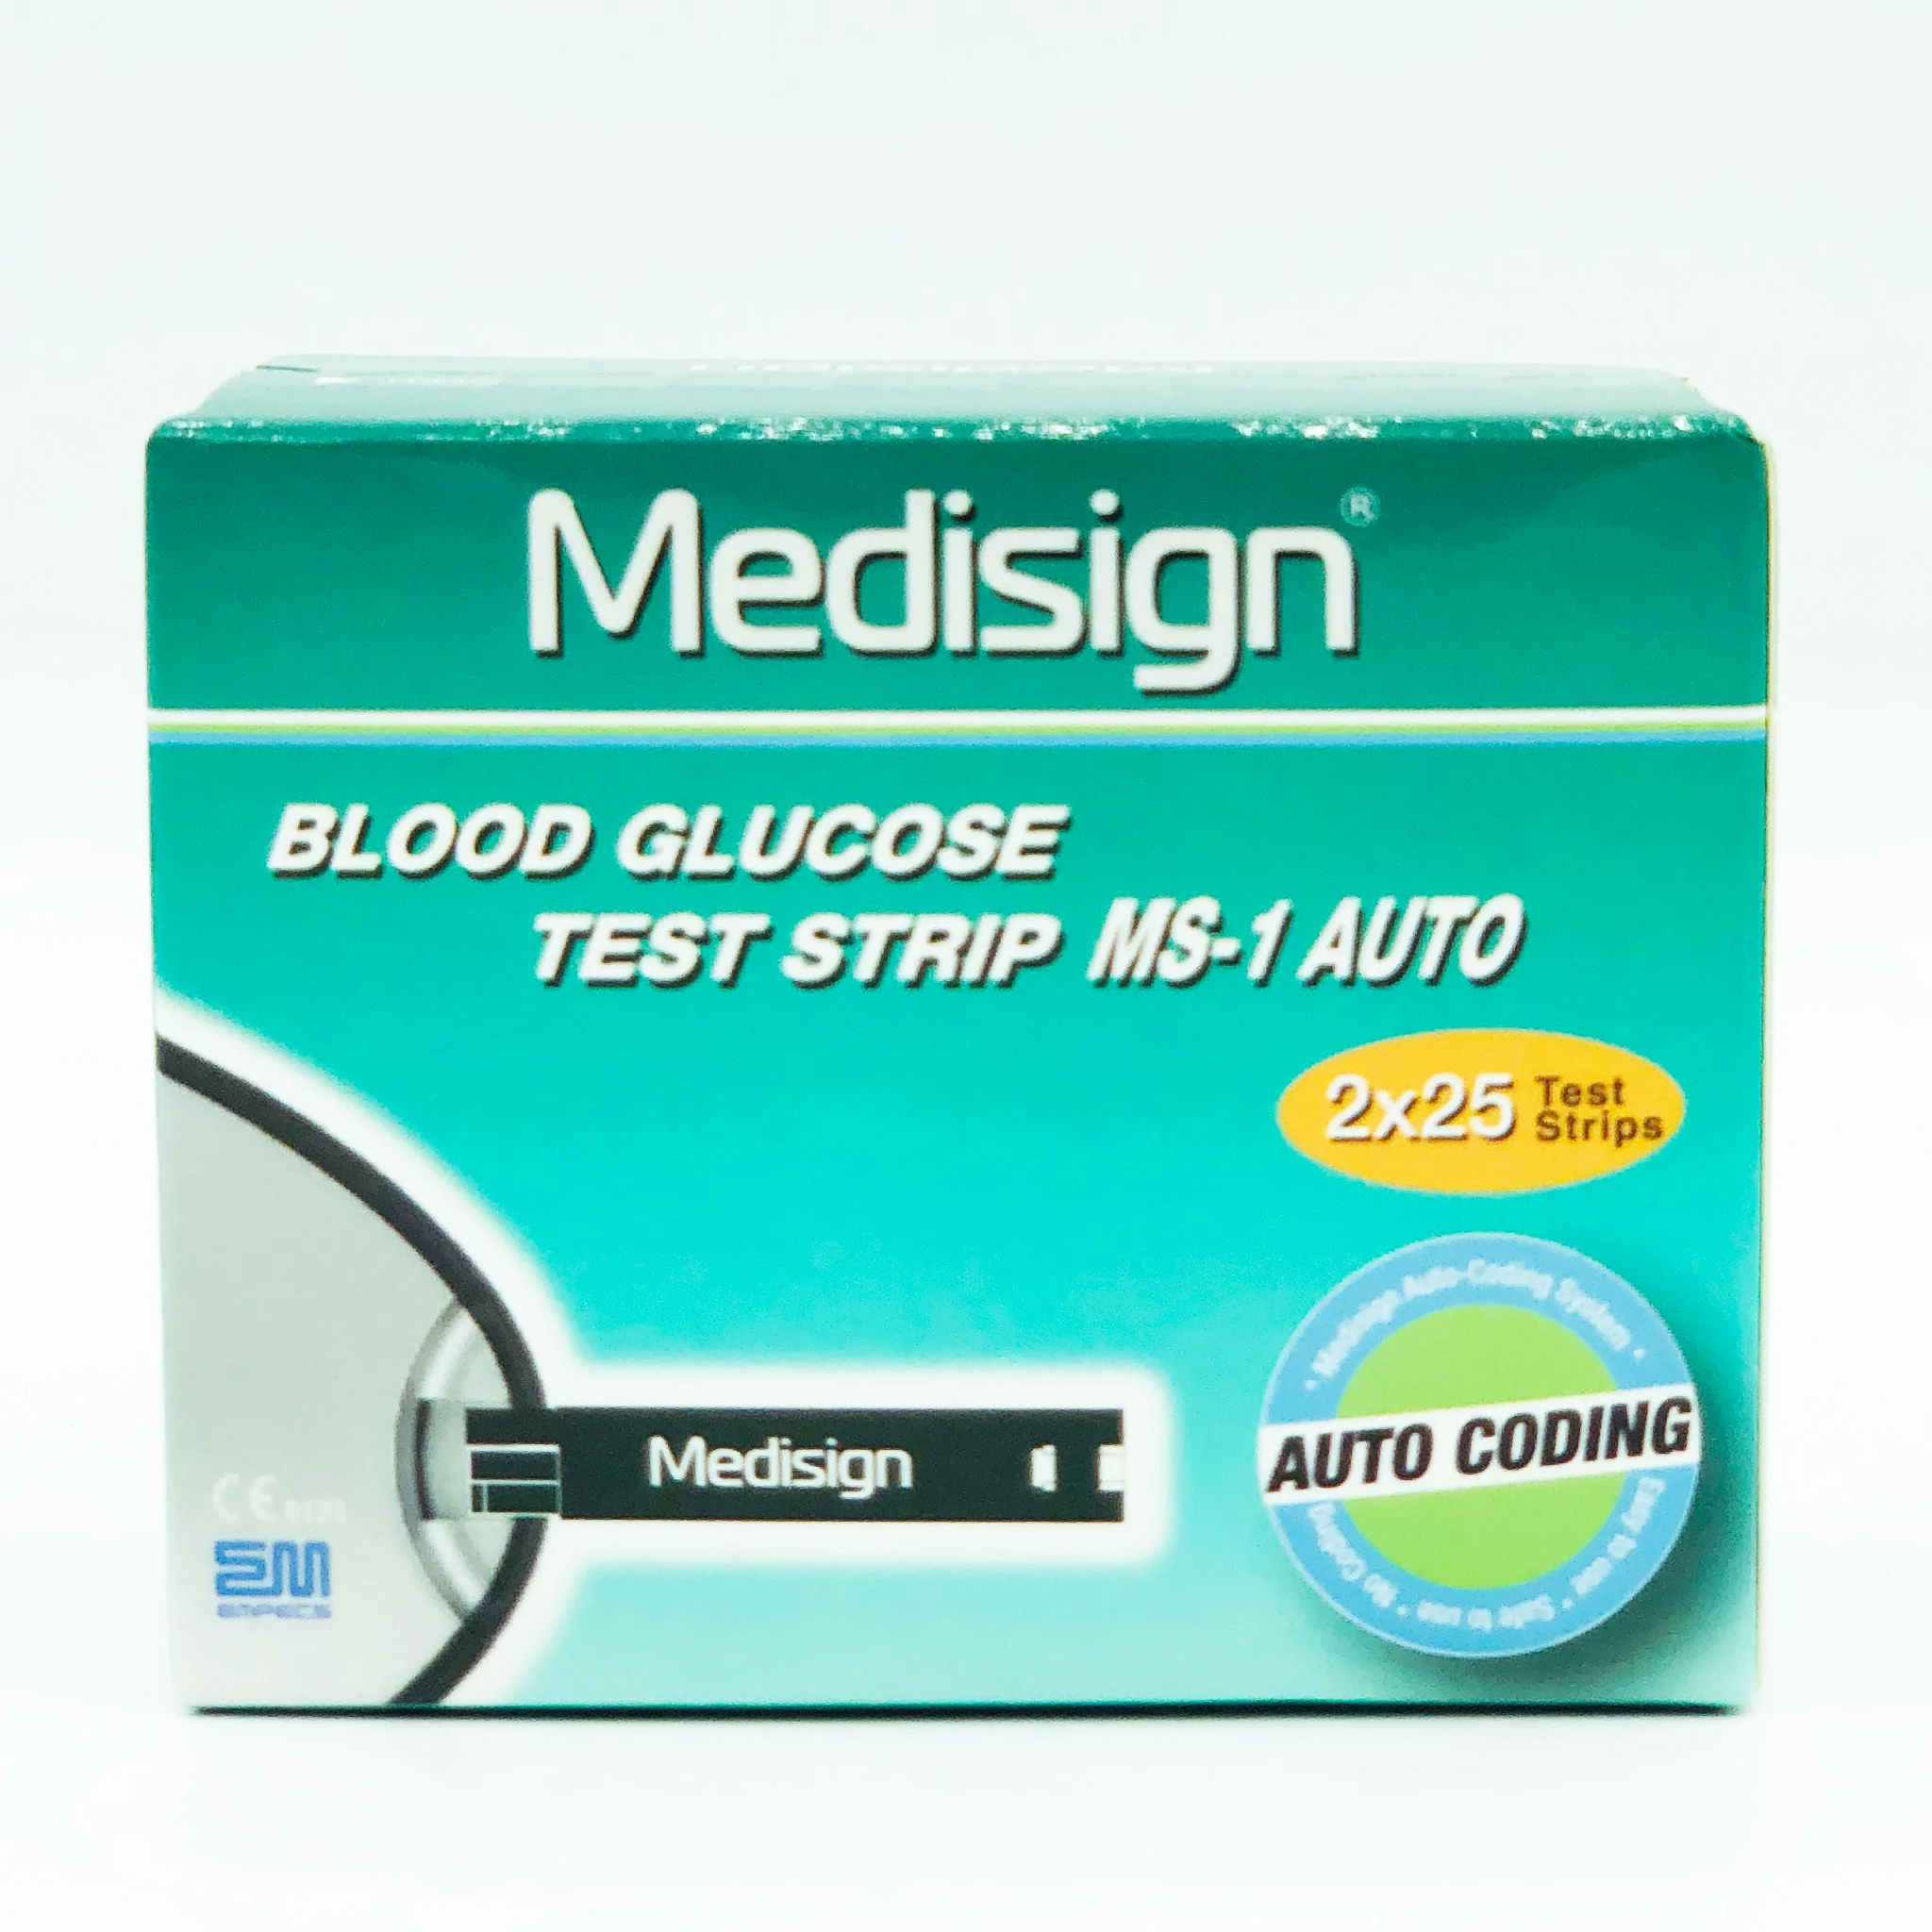 Medisign Glucometer Test Strip Price in Pakistan